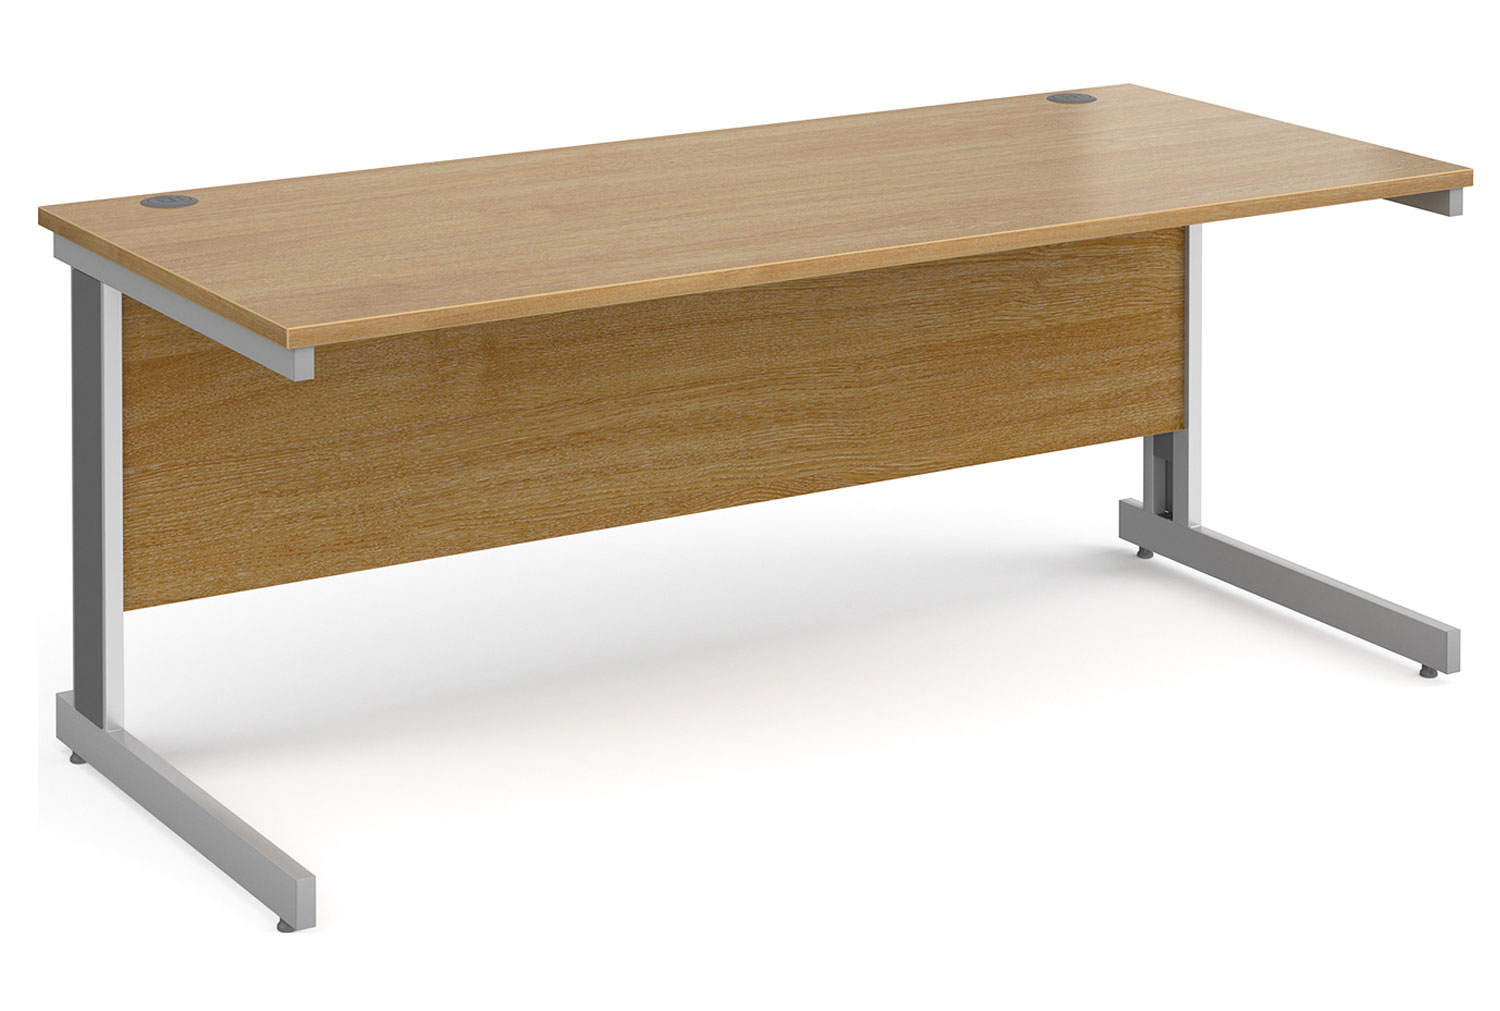 Tully Deluxe Rectangular Office Desk, 180wx80dx73h (cm), Oak, Fully Installed